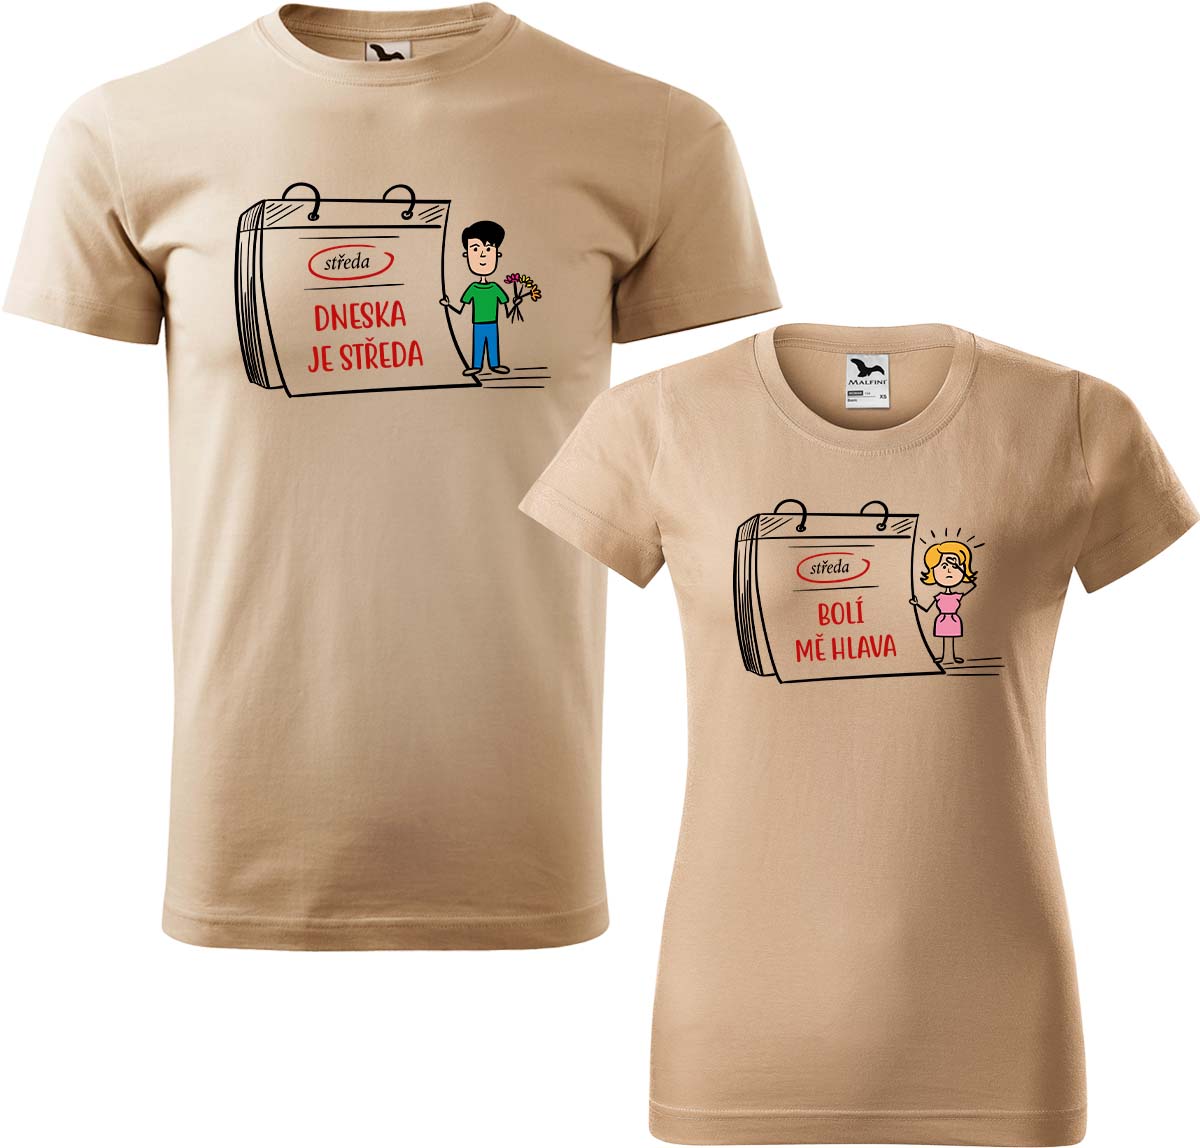 Trička pro páry - Dneska je středa Barva: Písková (08), Velikost dámské tričko: M, Velikost pánské tričko: XL